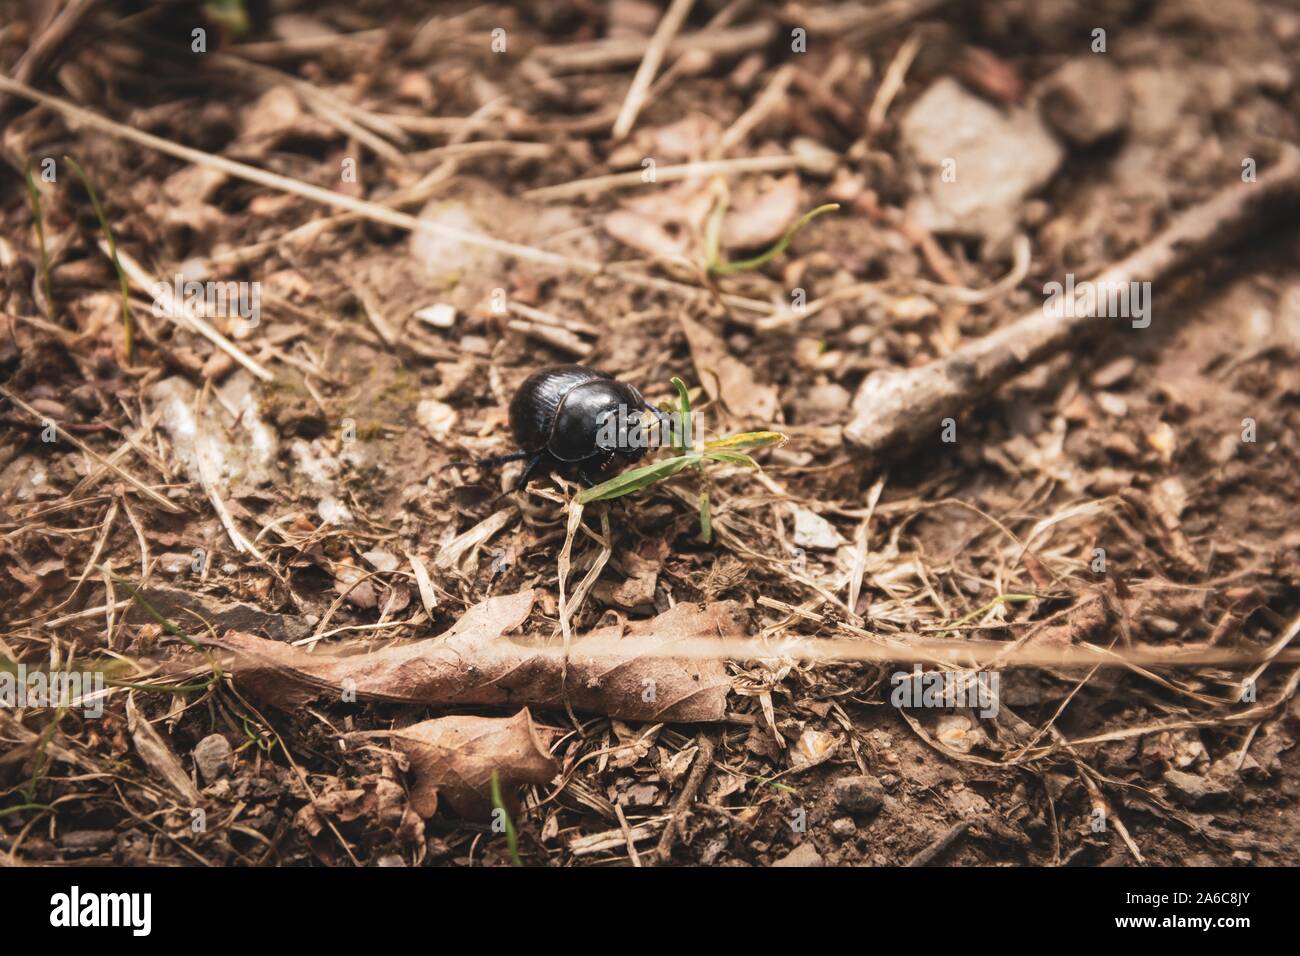 Un close up ritratto di un nero dung beetle tra la foresta detriti su una strada sterrata nel bosco. Foto Stock